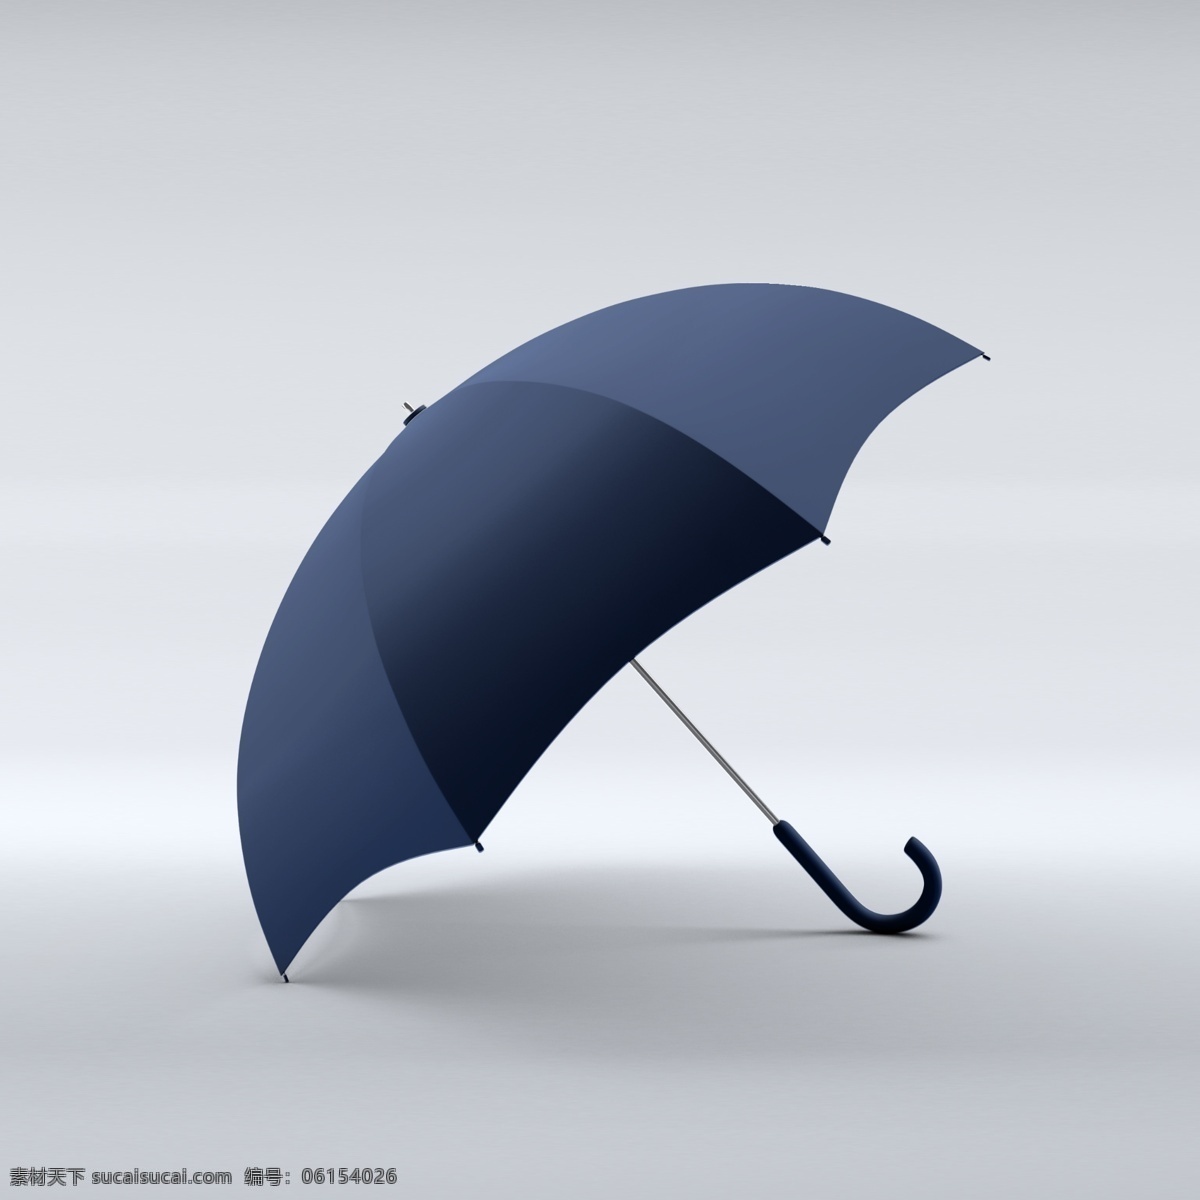 雨伞样机 雨伞贴图 雨伞设计 雨伞图案设计 雨伞底纹 雨伞图案背景 雨伞效果图 样机效果贴图 生活百科 生活用品